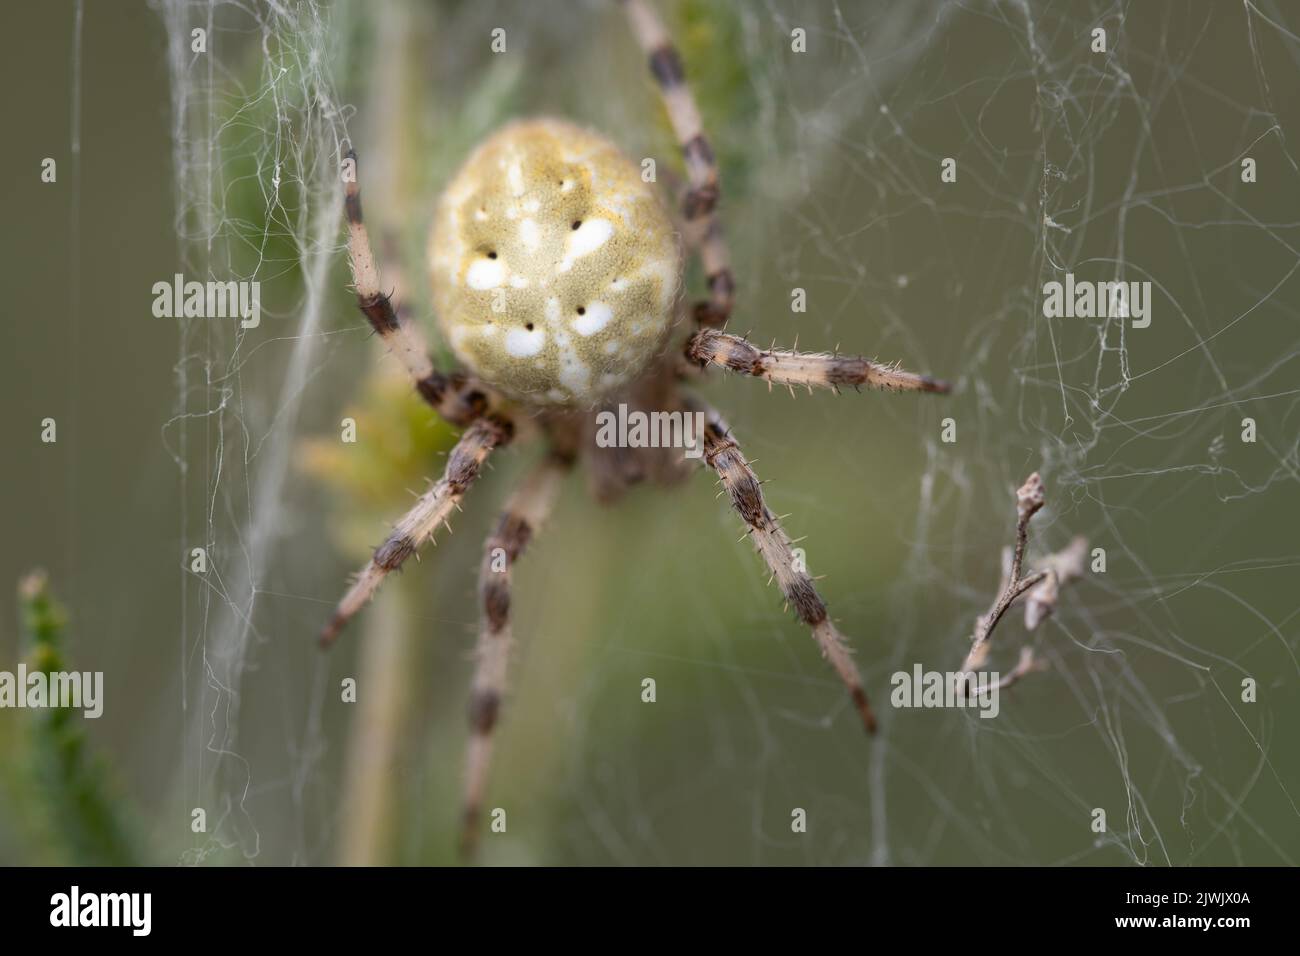 Primo piano di un ragno da giardino (Araneus) che si nasconde in una ragnatela di ciottoli su uno sfondo verde in natura. Foto Stock